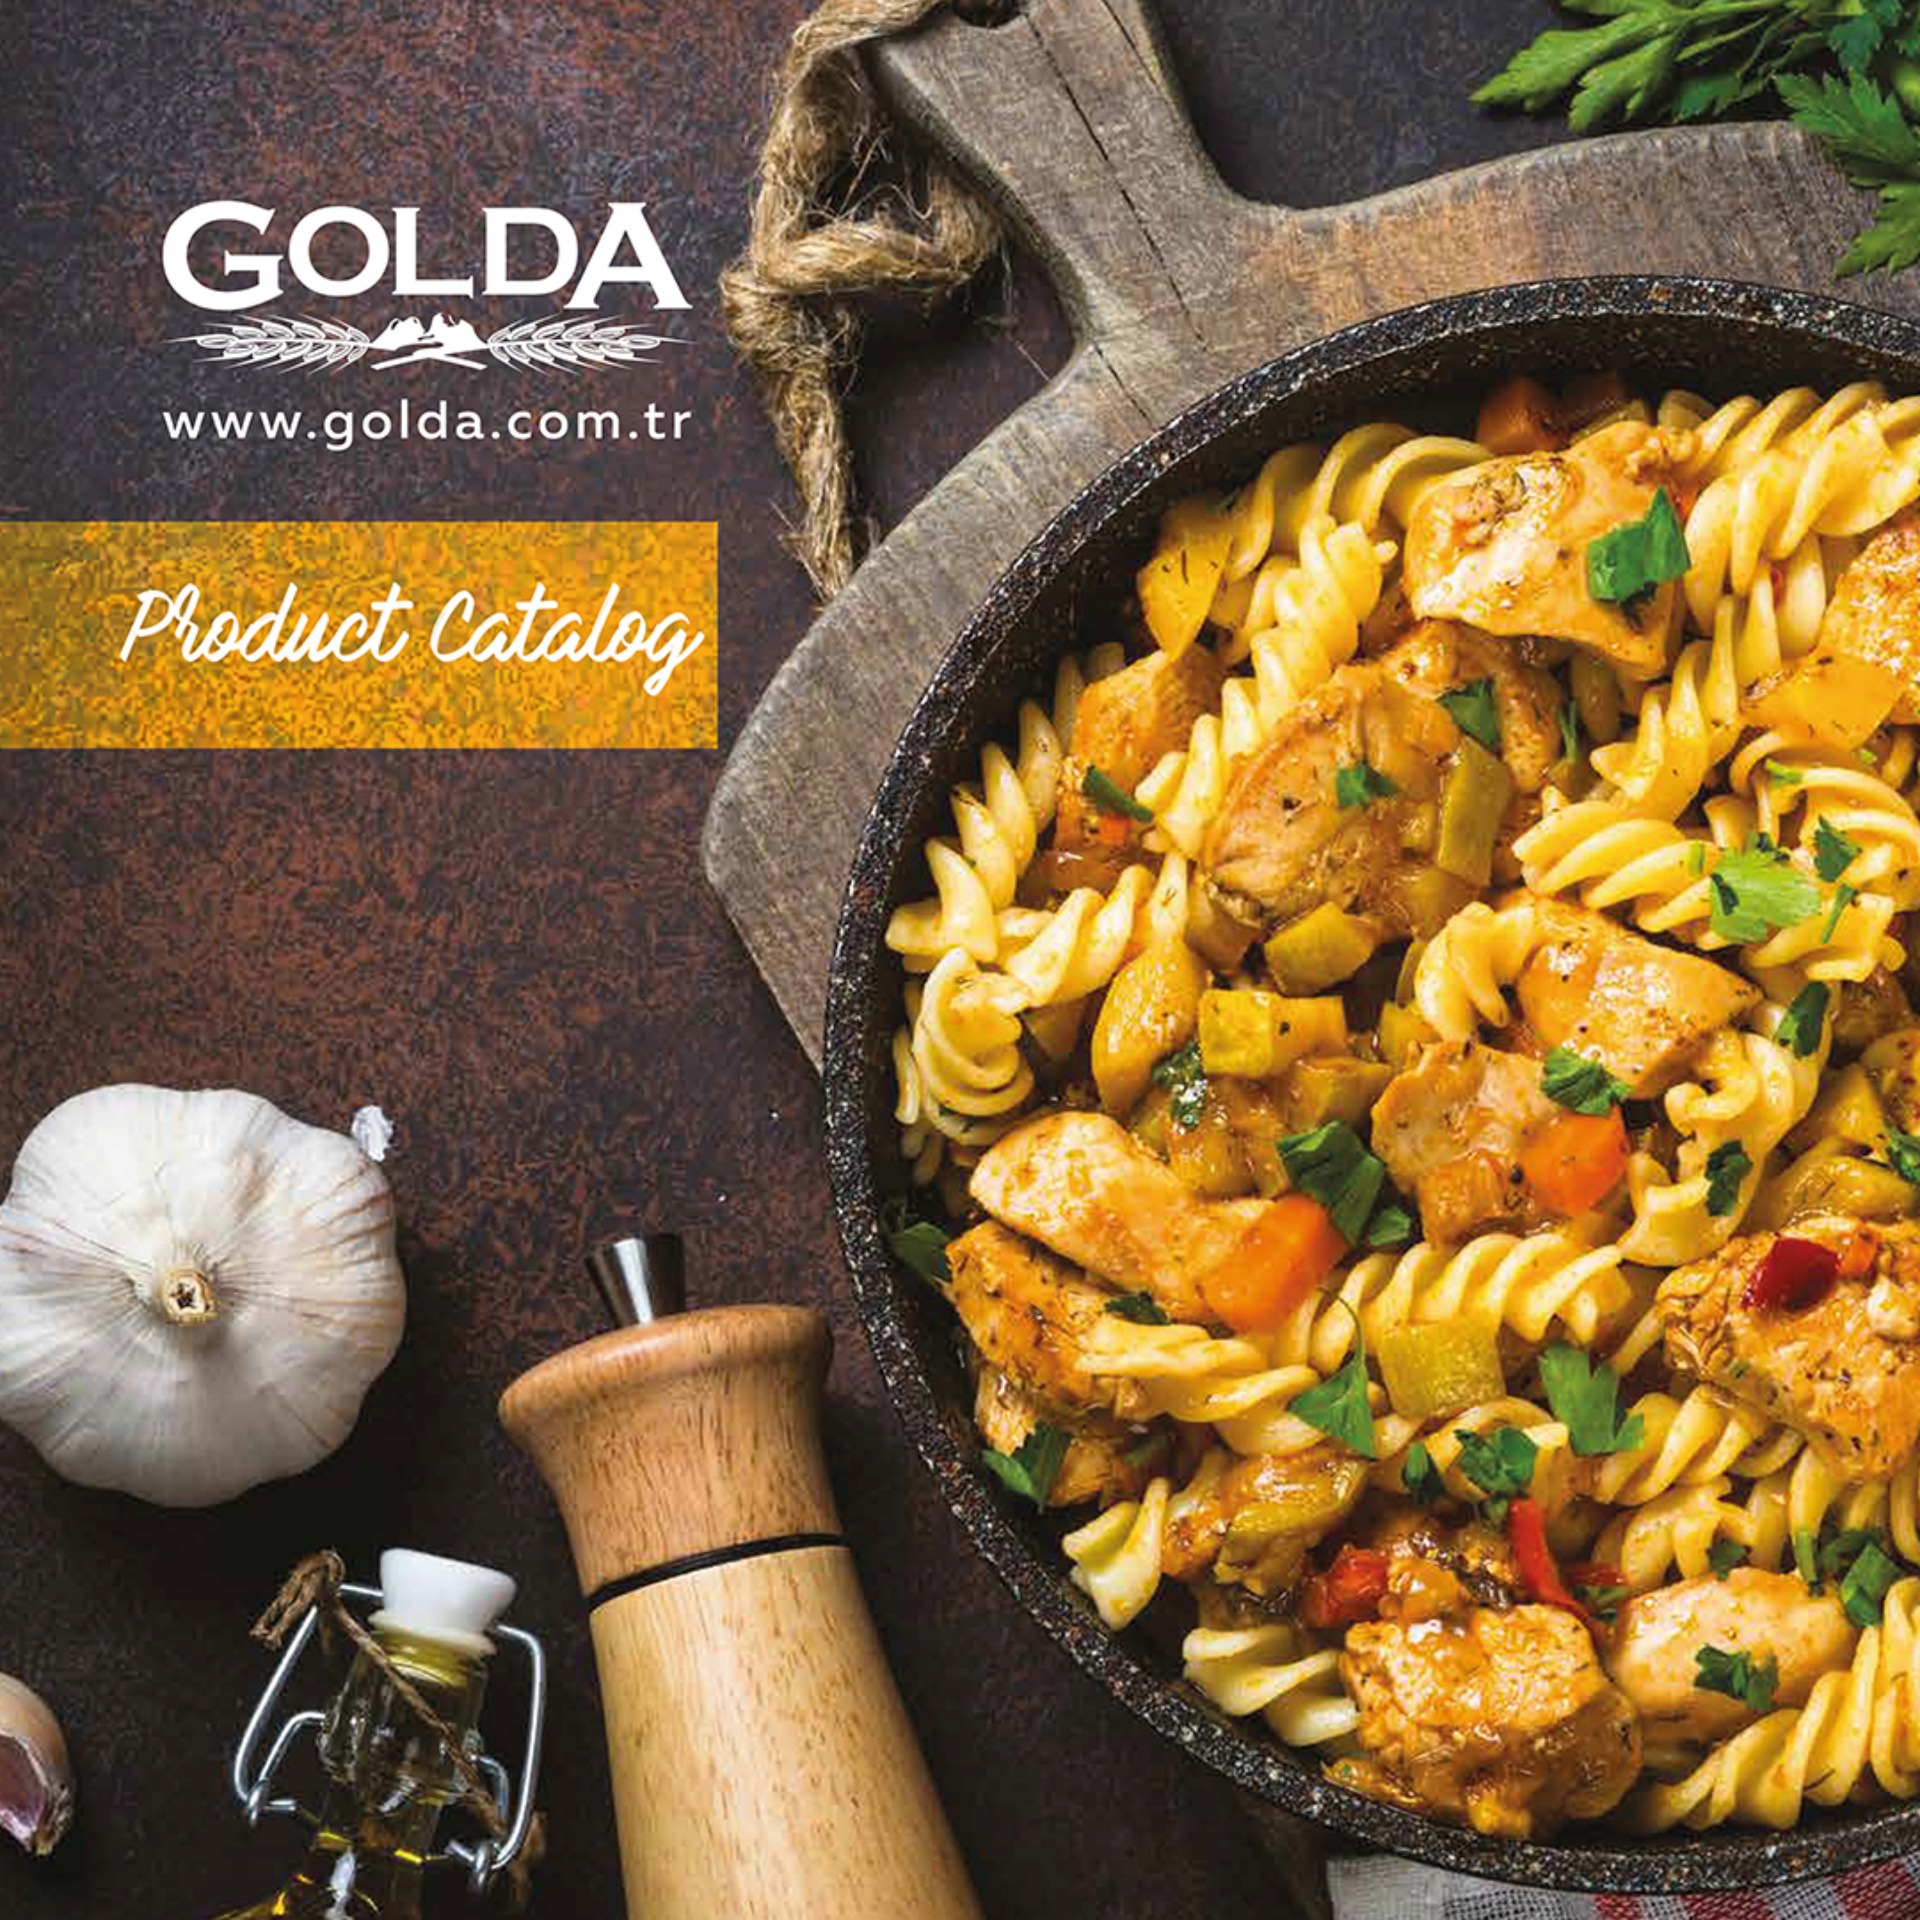 Golda Product Catalog